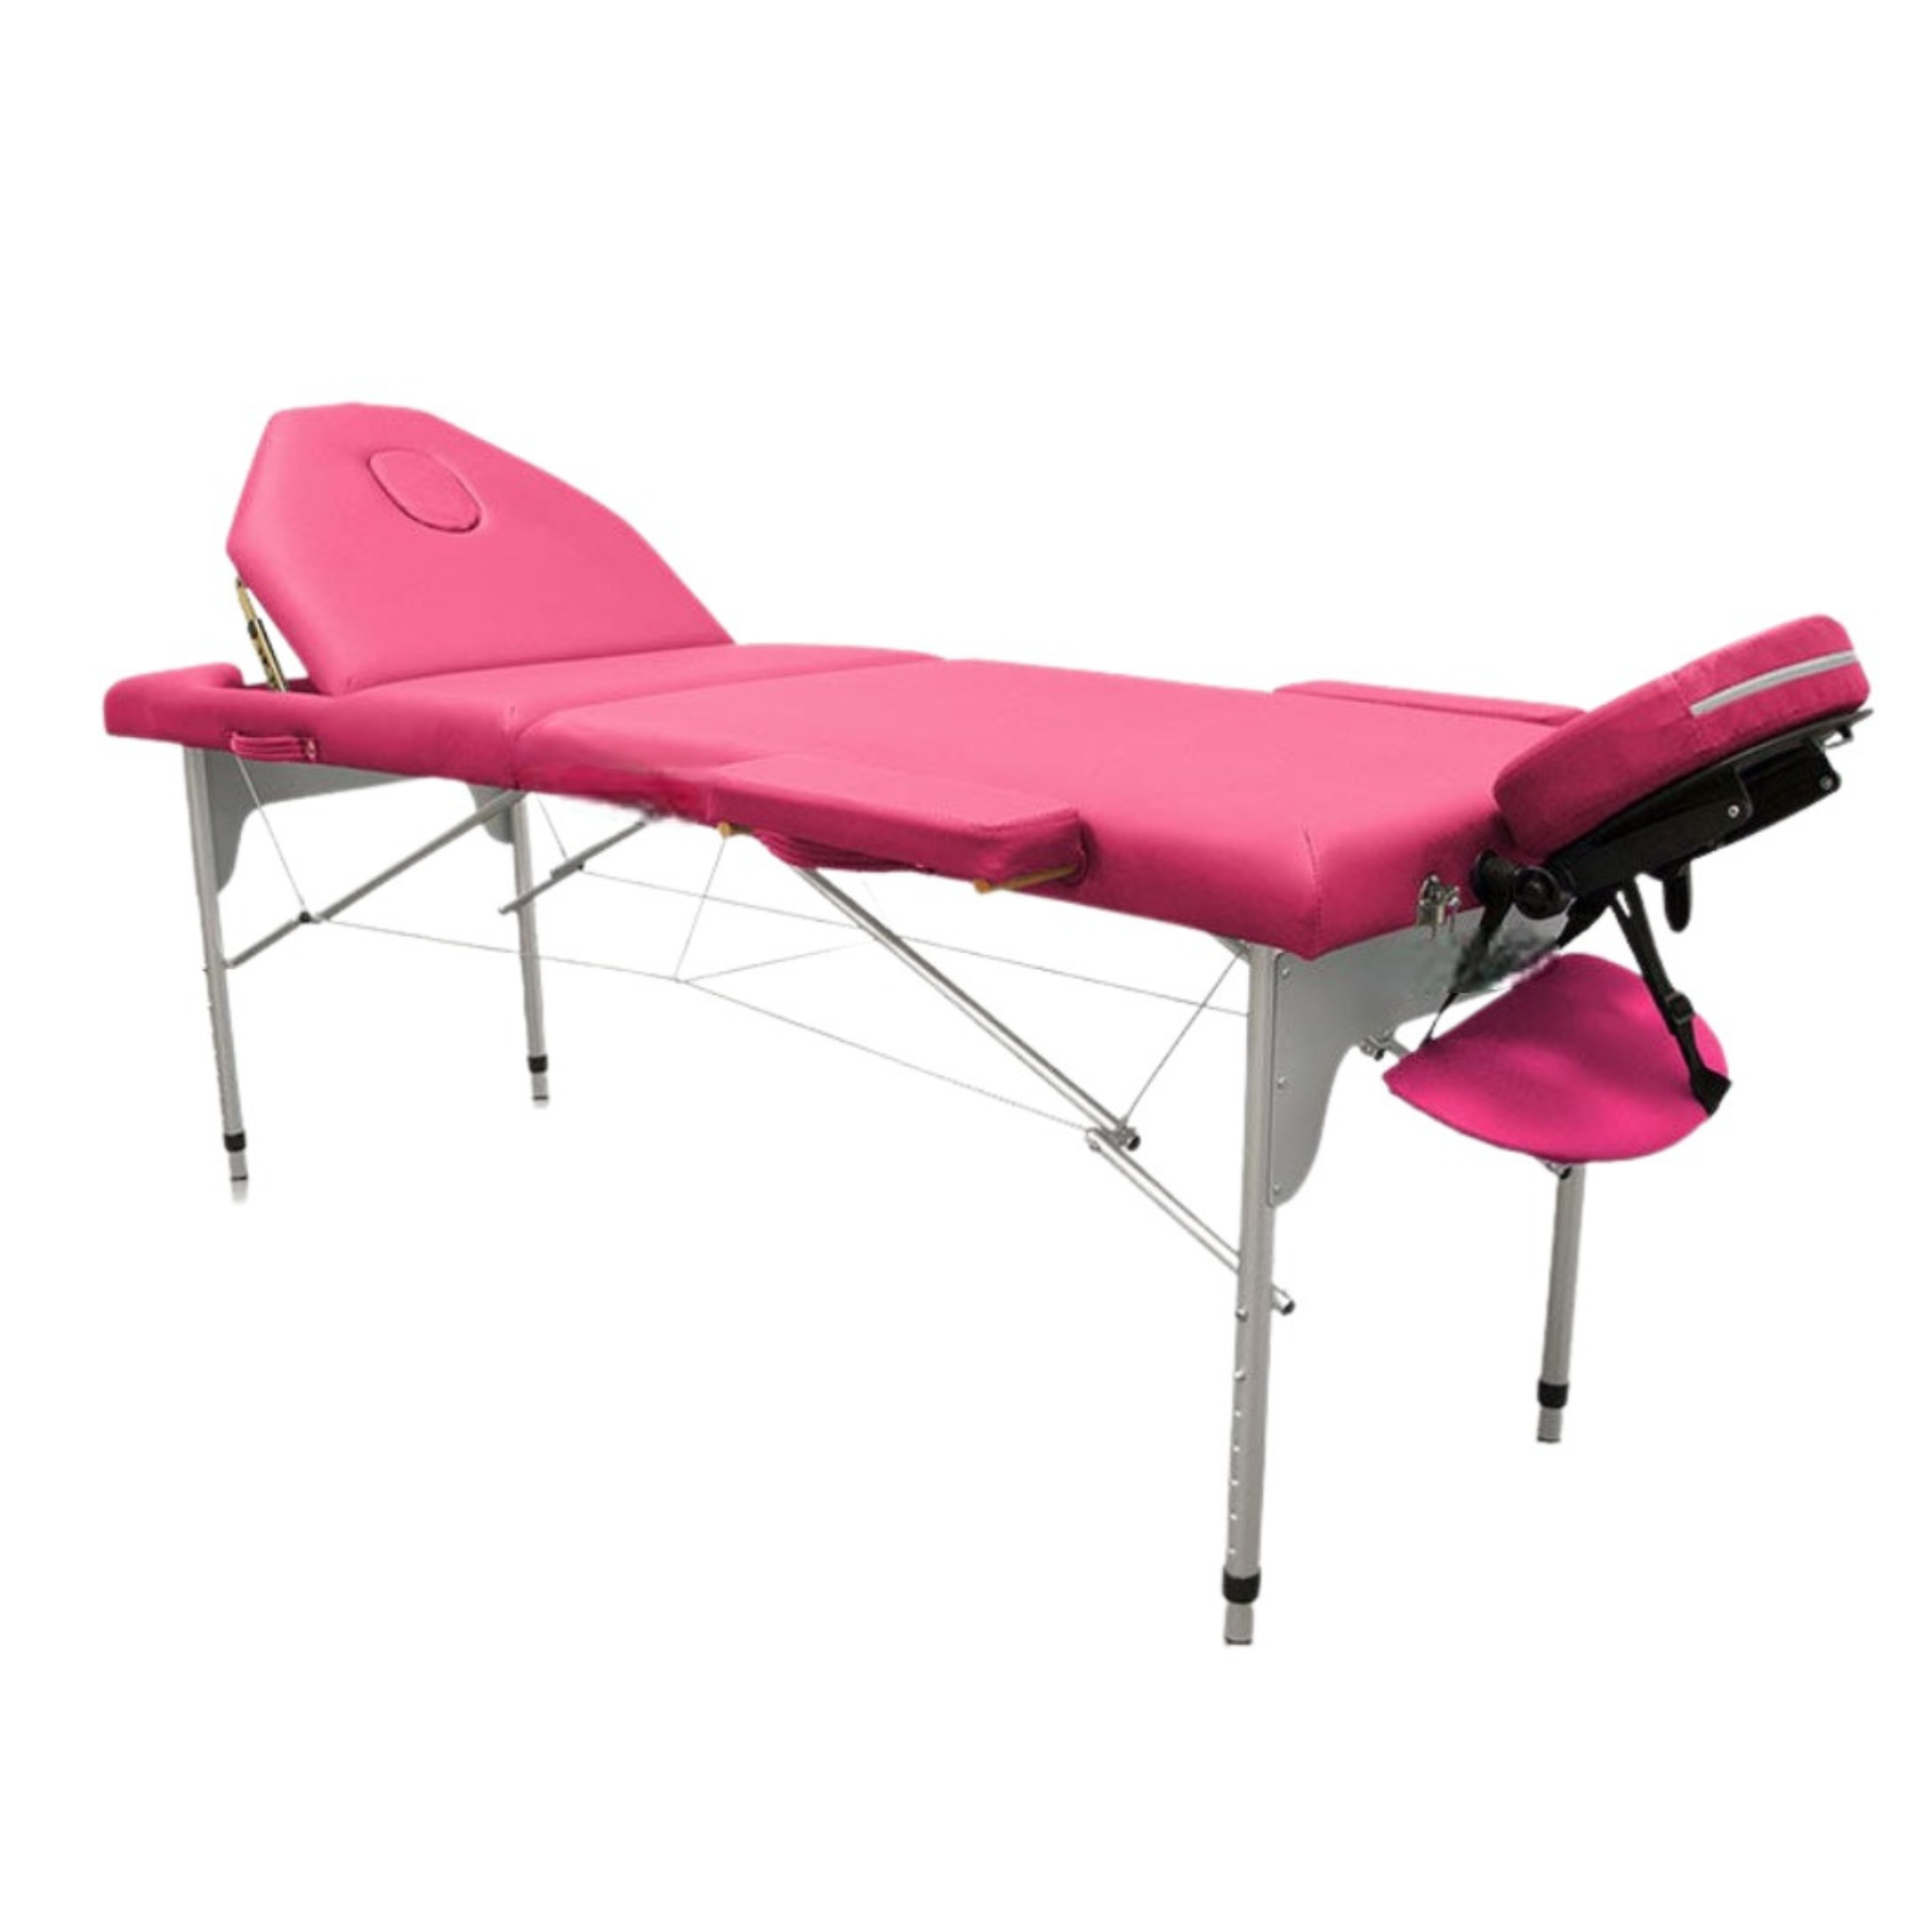 Table de massage pliante en aluminium 186 x 66 cm avec dossier inclinable - 7 coloris